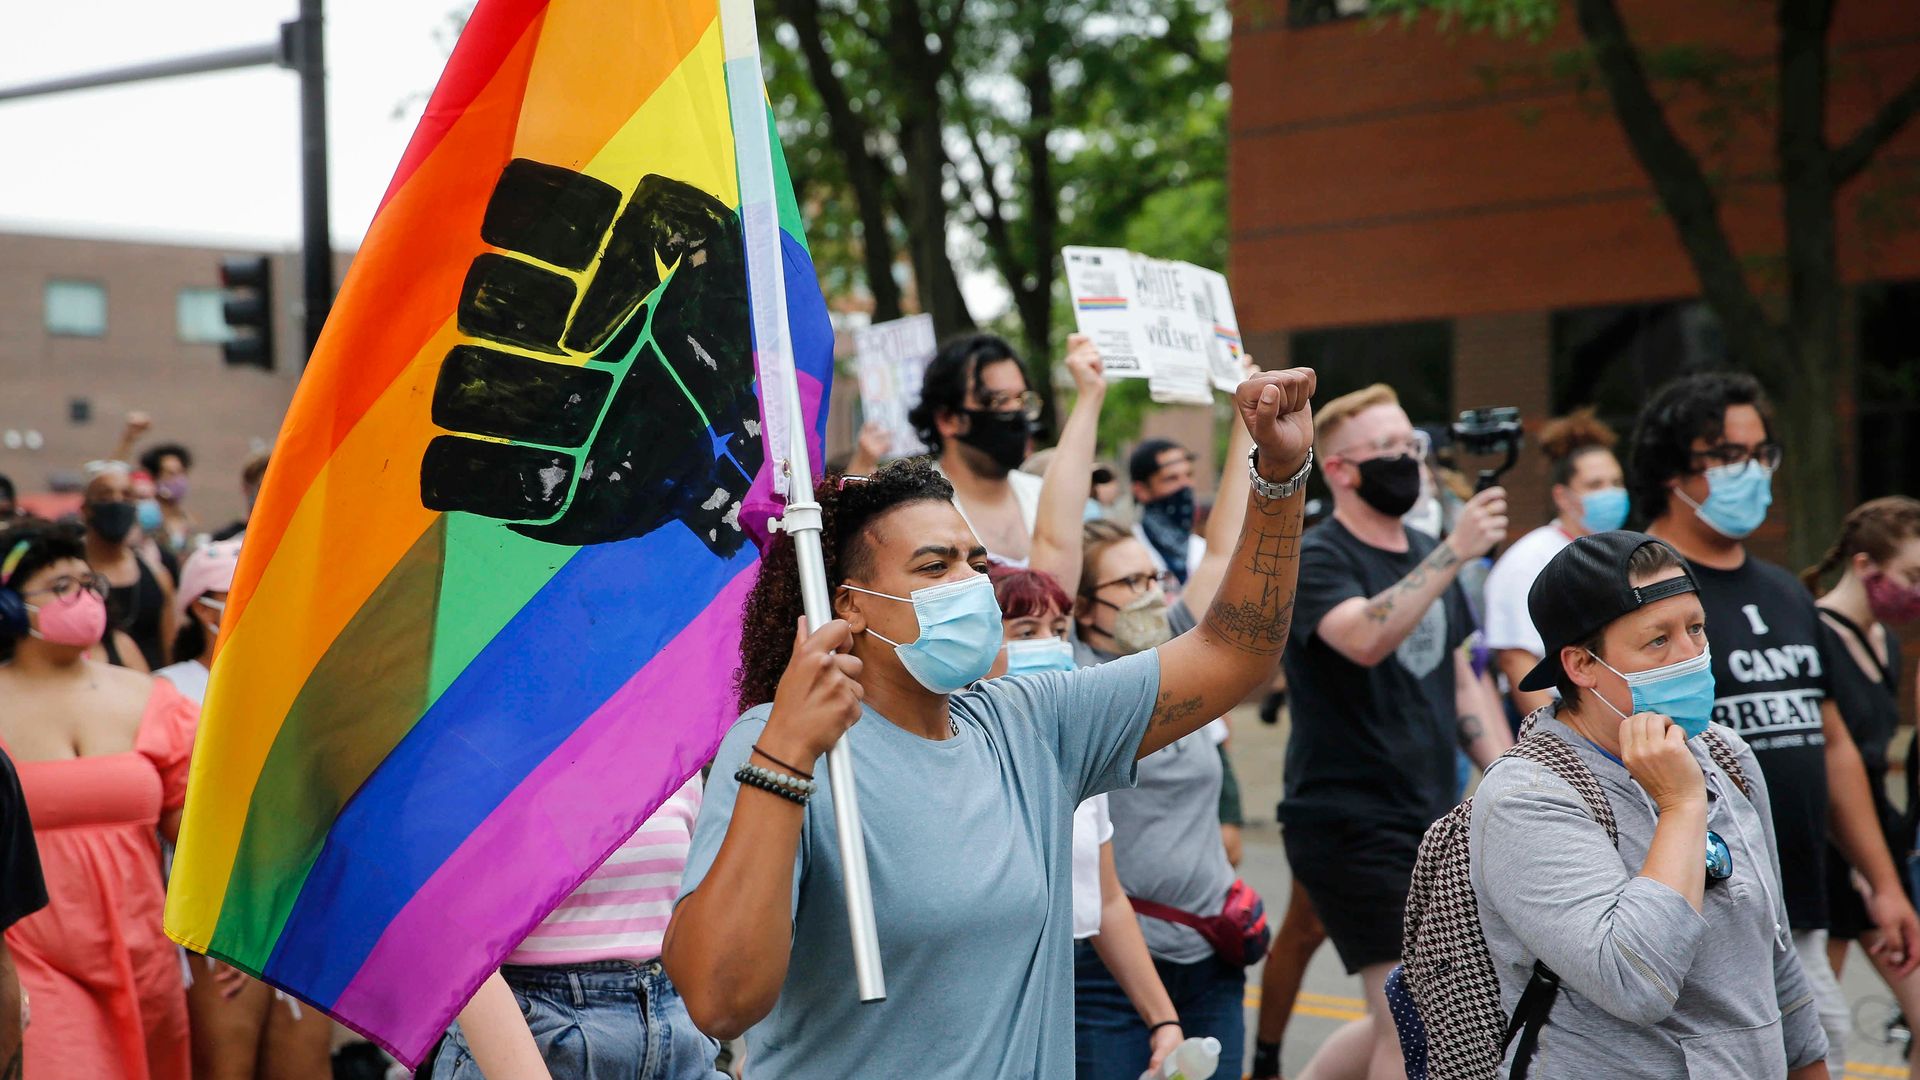 Des Moines police to participate in Pride parade Axios Des